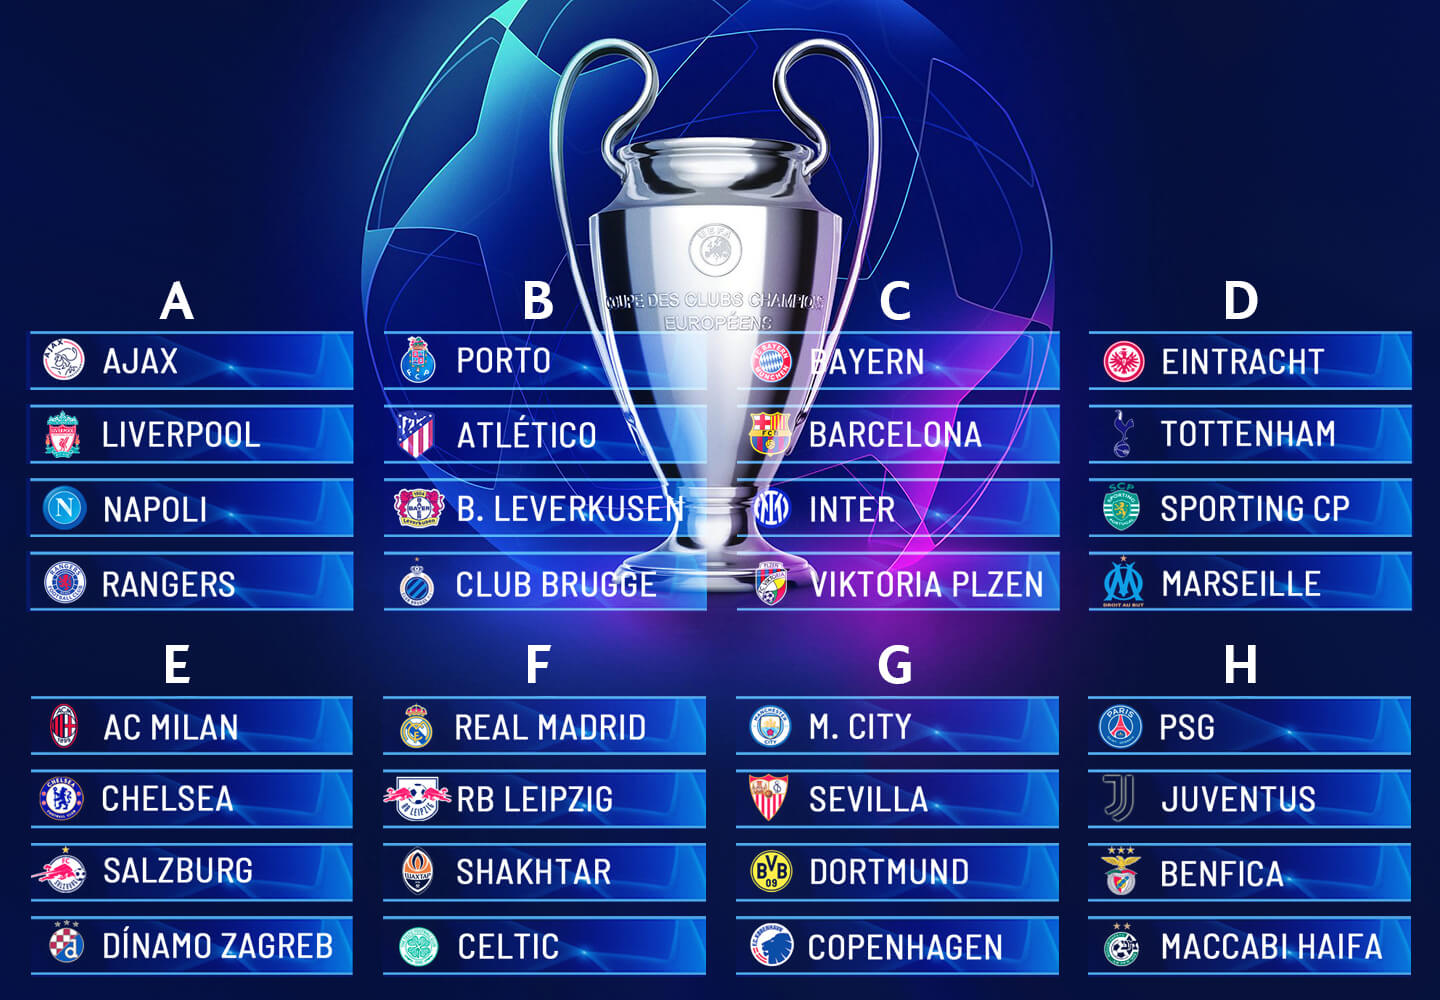 Pozrite si zloženie skupín Ligy majstrov na novú sezónu 2022/23.